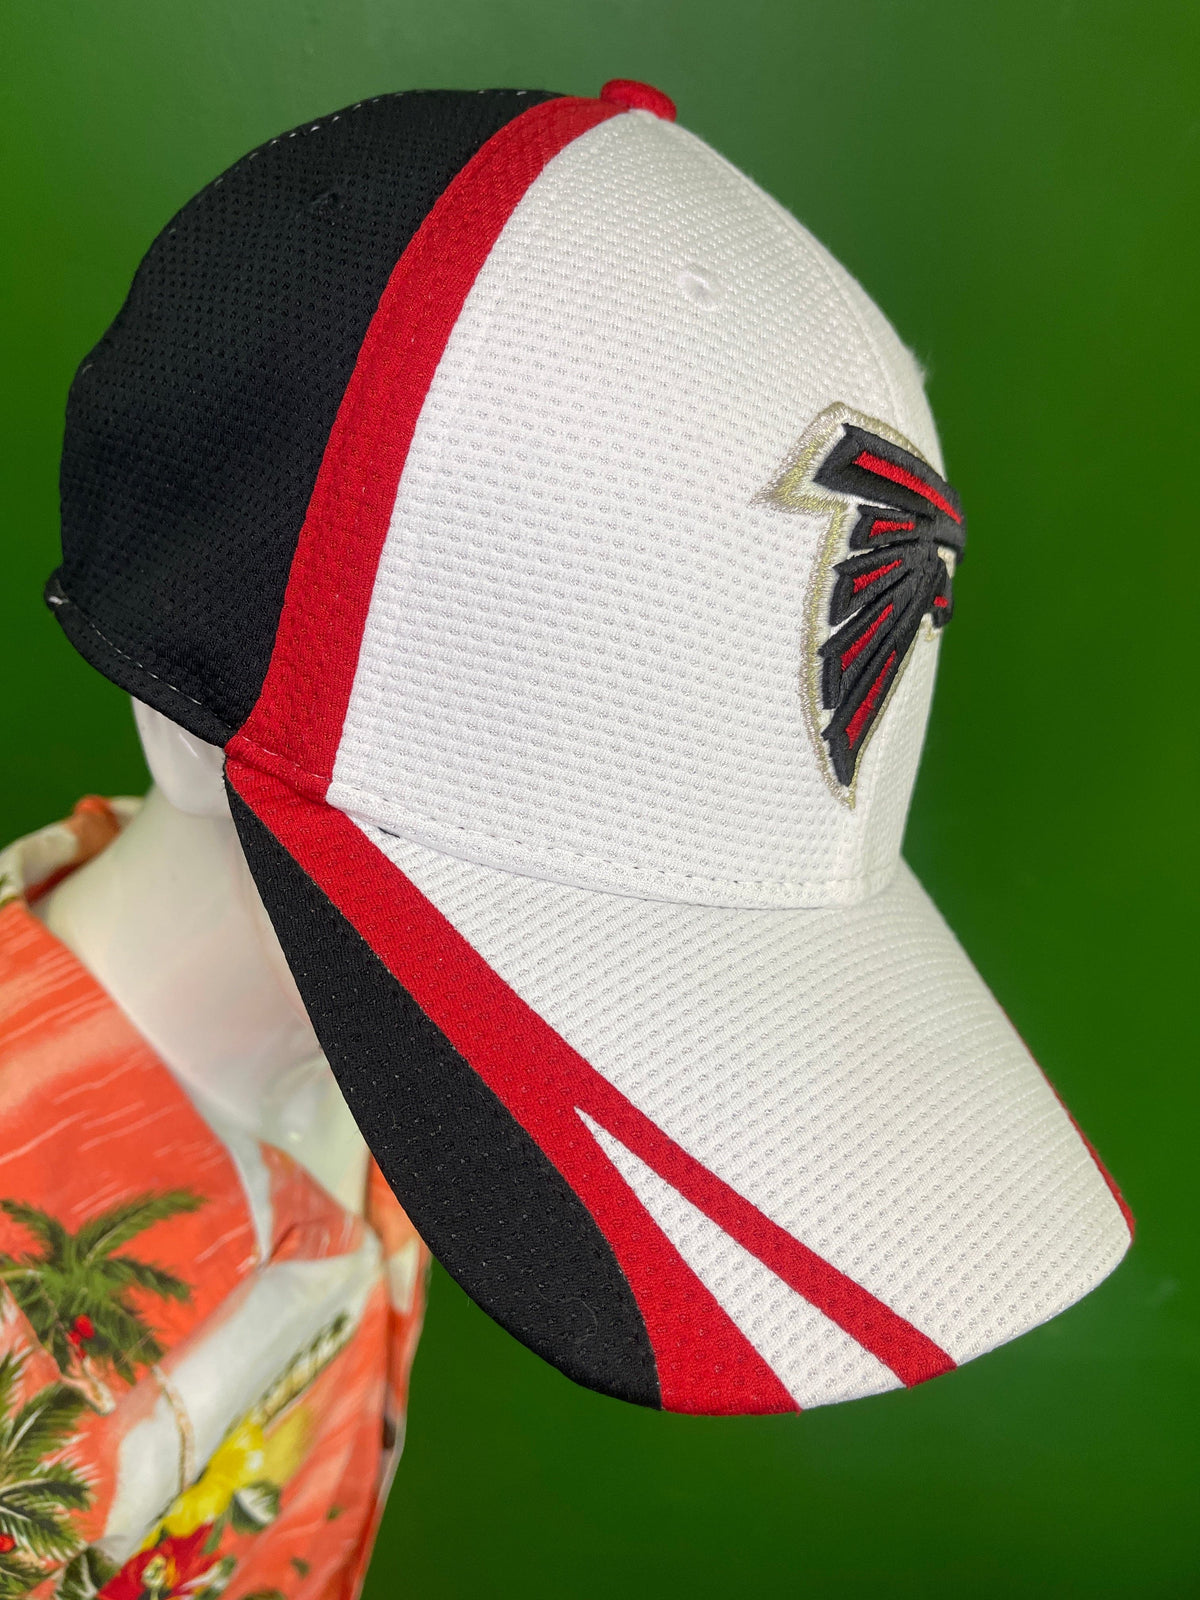 NFL Atlanta Falcons New Era 39THIRTY Hat/Cap Medium/Large